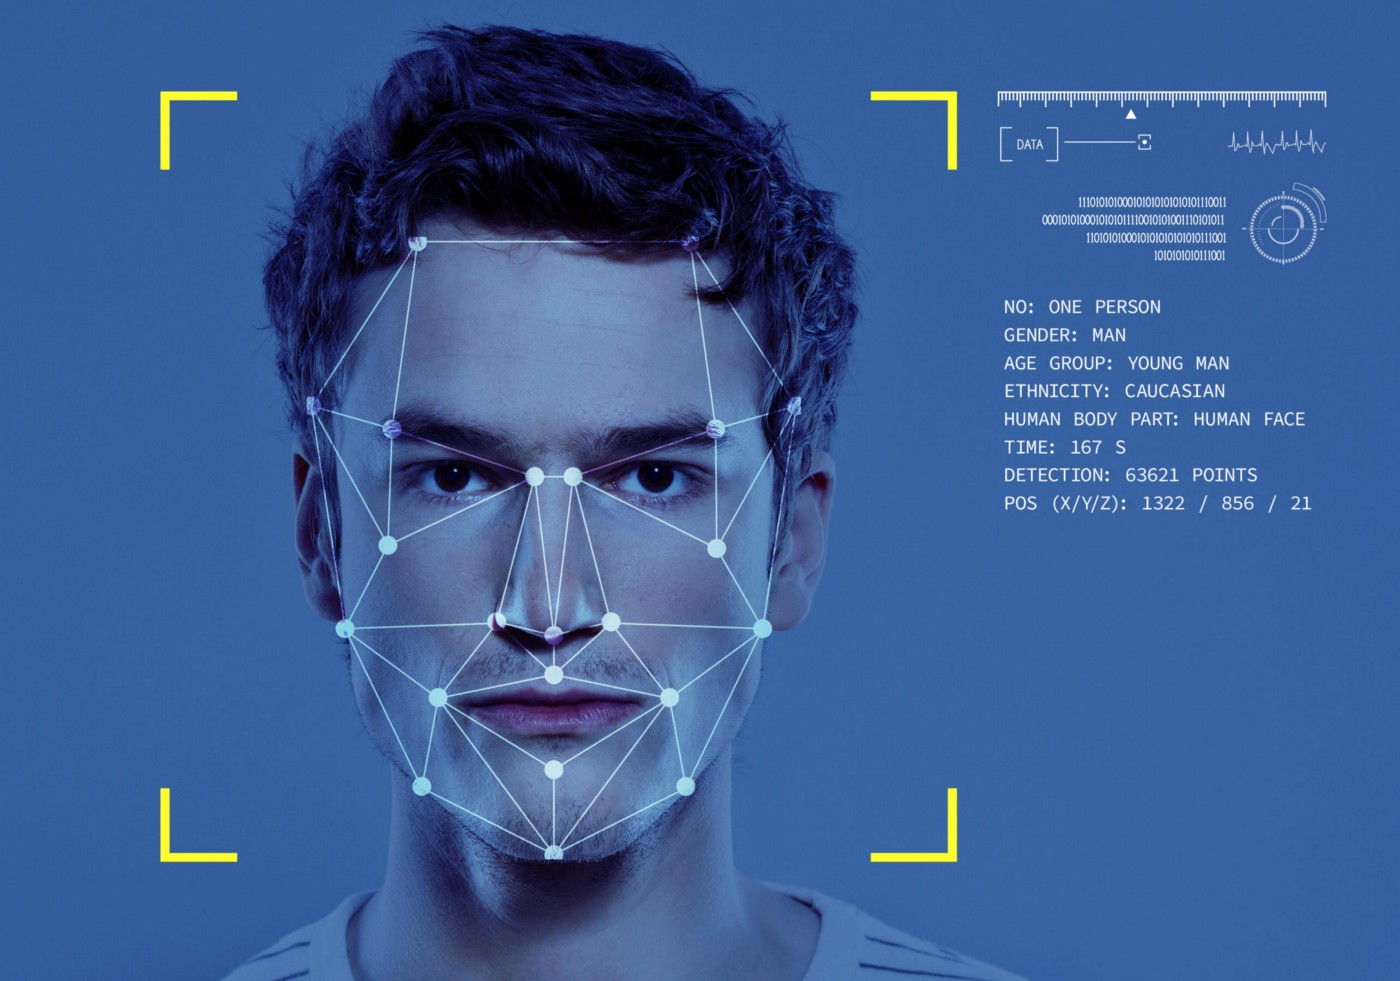 Công nghệ nhận diện khuôn mặt là một loại phần mềm sinh trắc học ánh xạ các đặc điểm khuôn mặt của một cá nhân về mặt toán học và lưu trữ dữ liệu dưới dạng faceprint (dấu khuôn mặt). Công nghệ sử dụng các thuật toán Deep Learning để so sánh ảnh chụp trực tiếp hoặc hình ảnh kỹ thuật số với faceprint được lưu trữ để xác minh danh tính. Ảnh: @AFP.